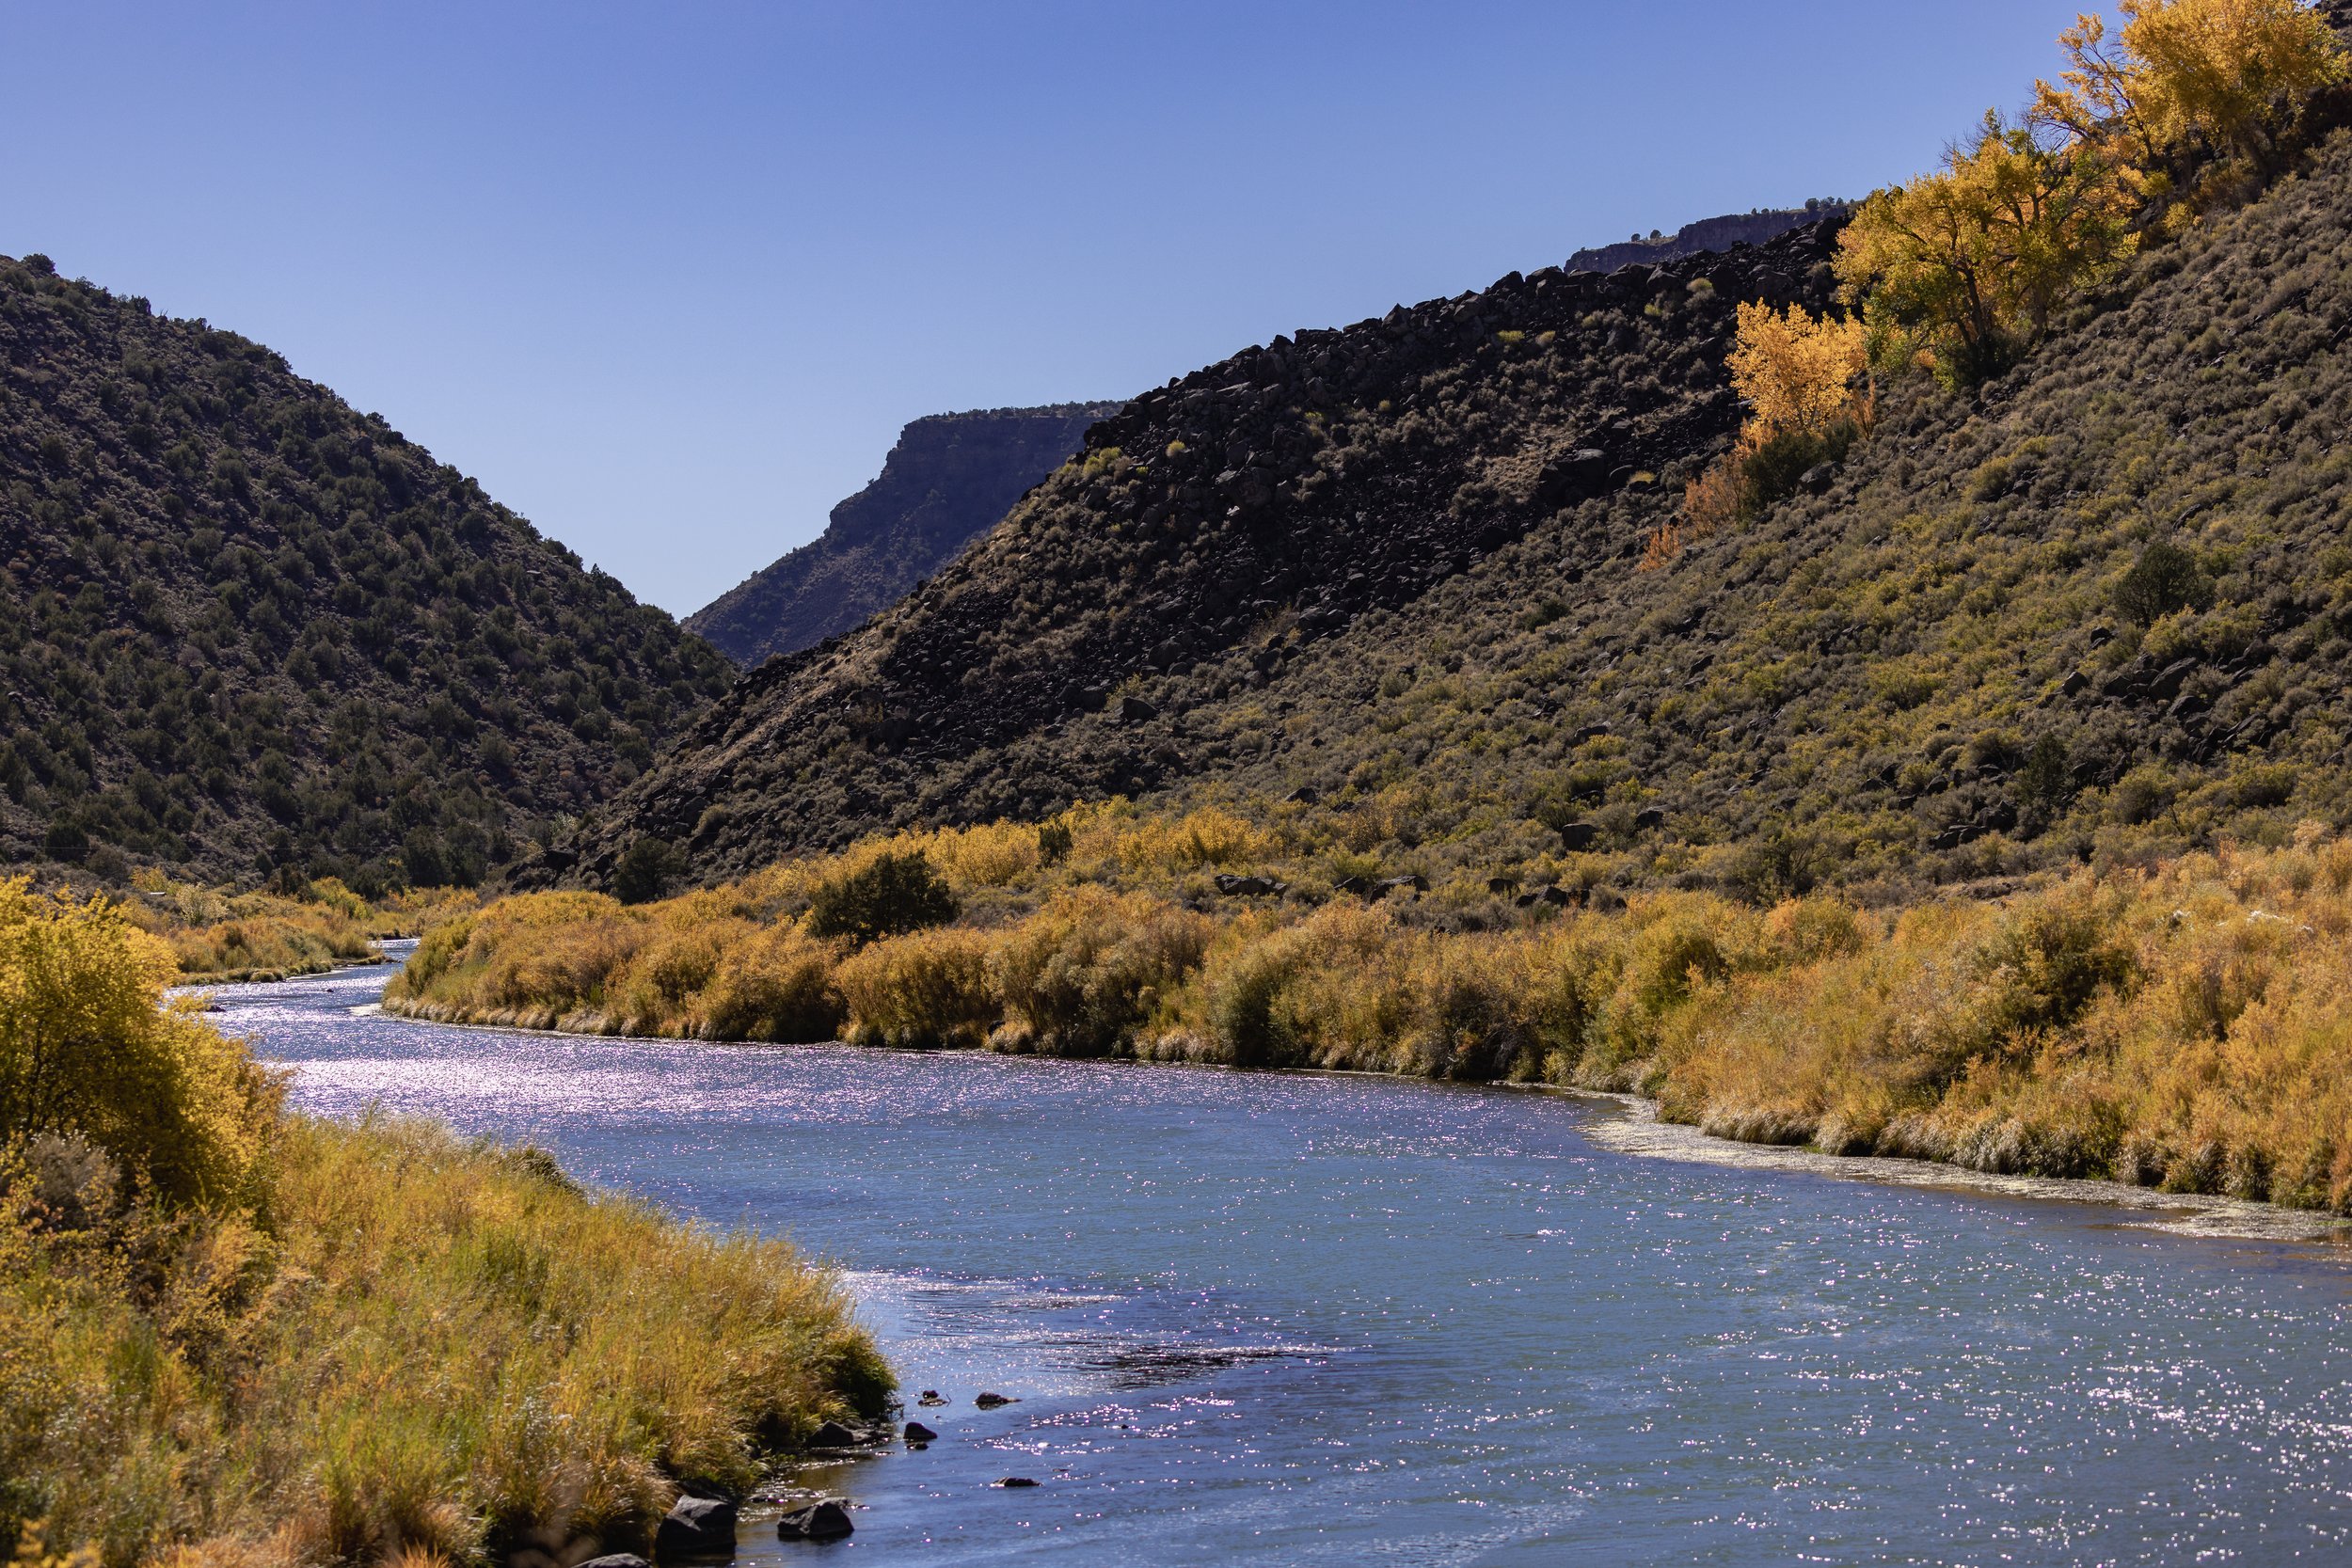 Rio Grande River, New Mexico